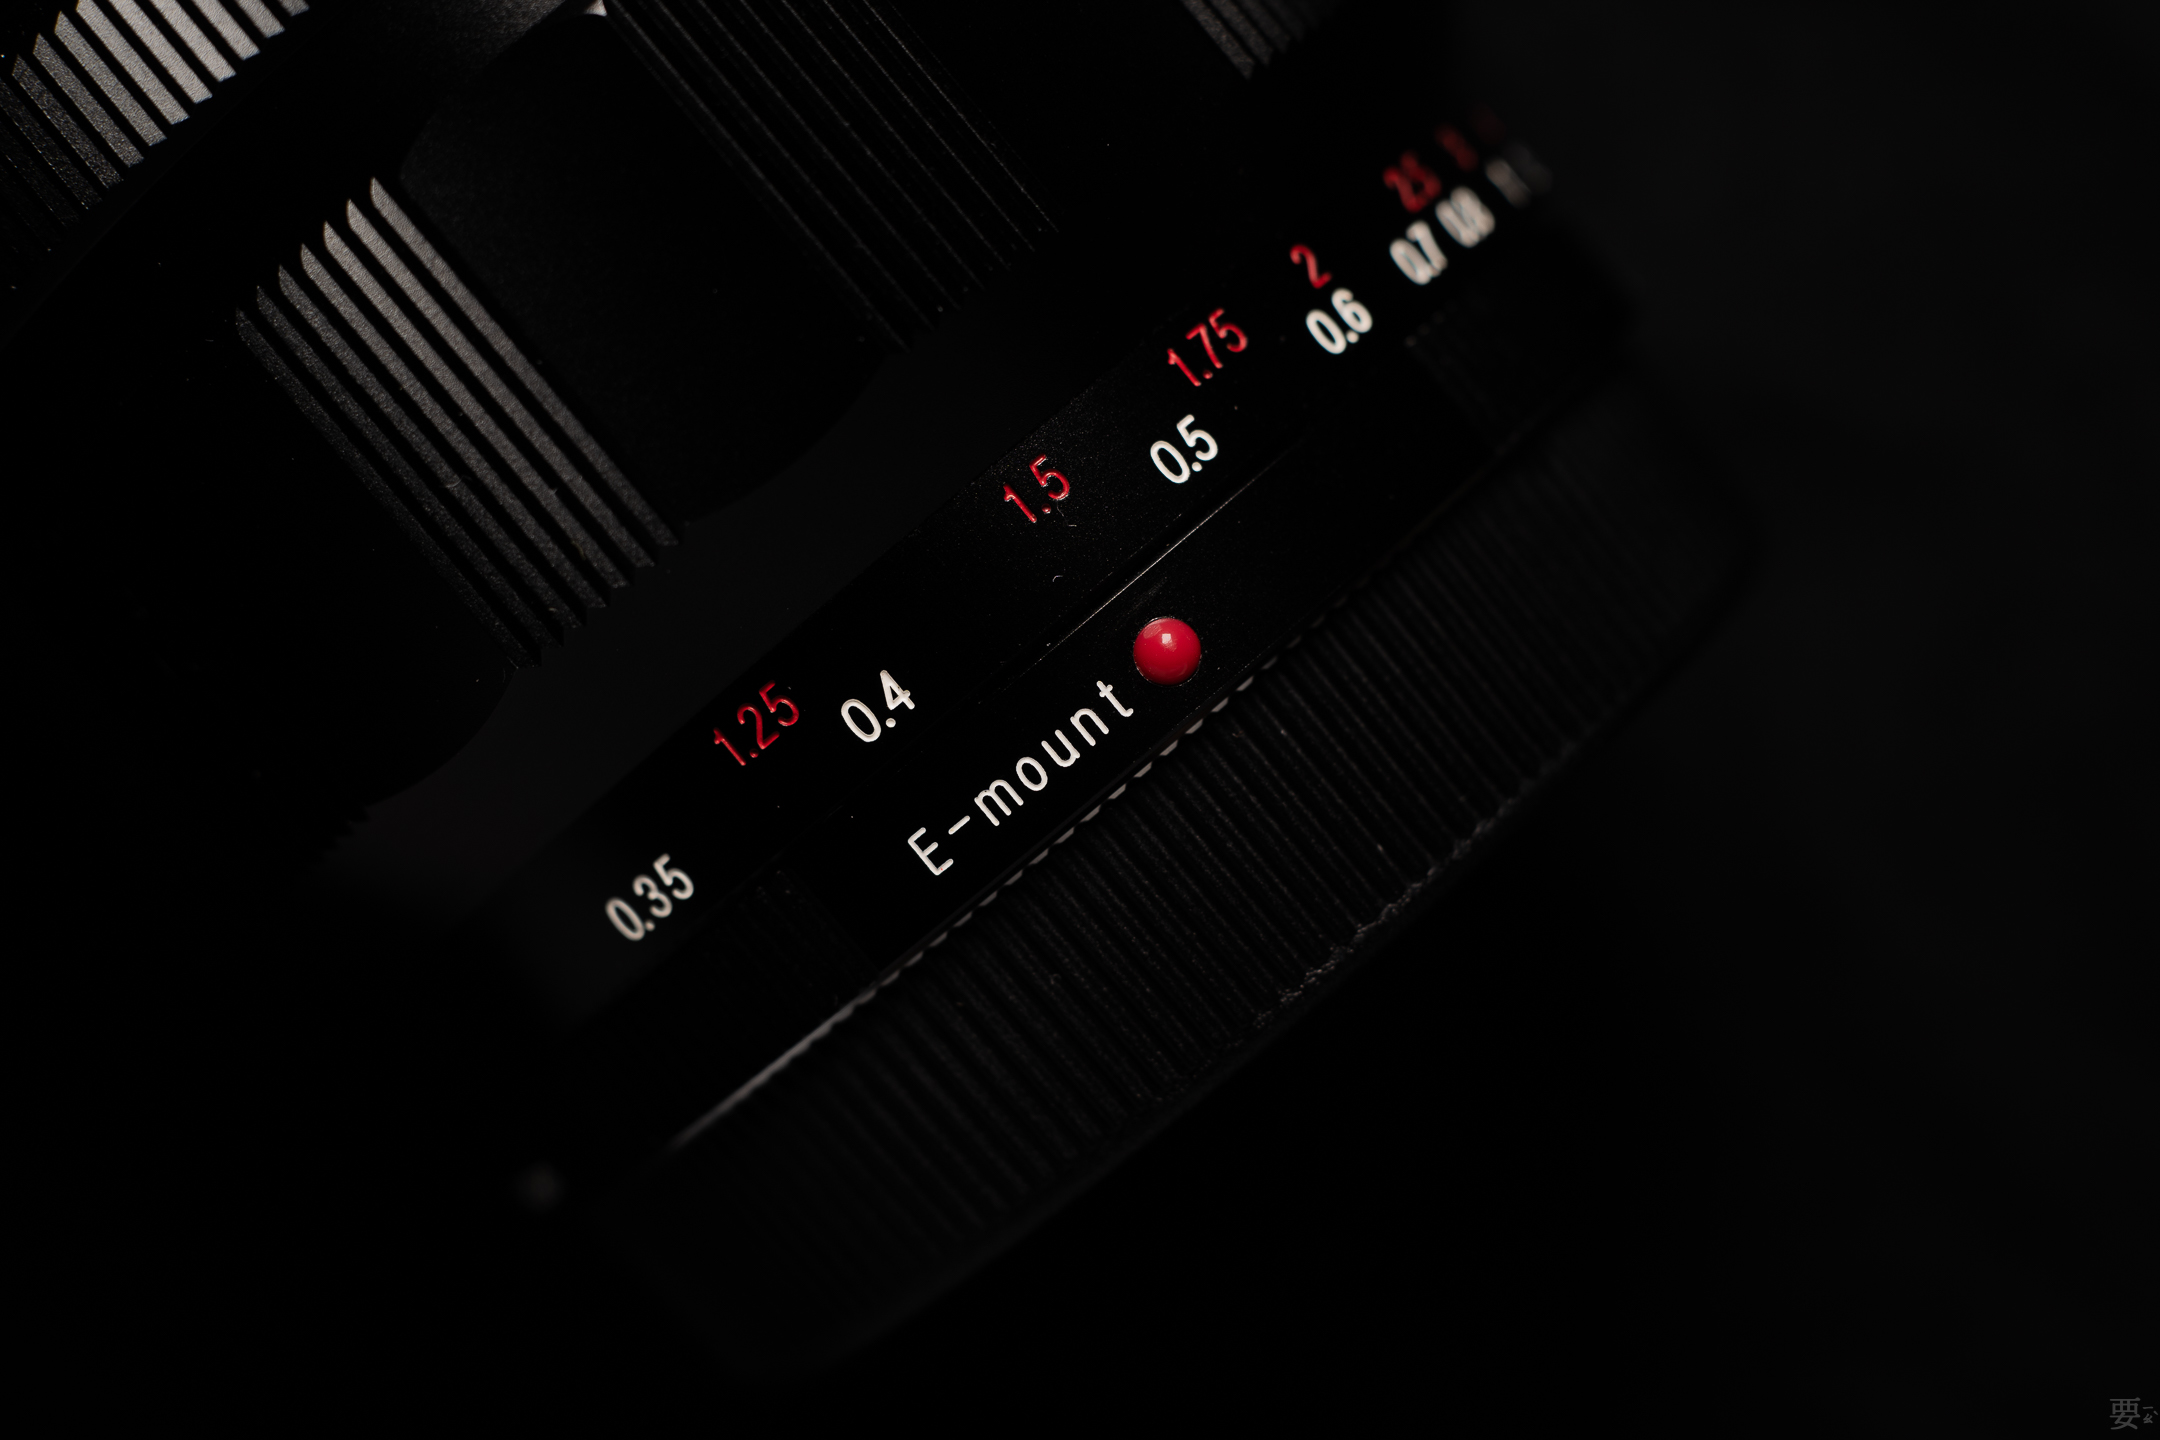 福伦达 Nokton 40mm f1.2 索尼e口手动镜头 - 长期使用报告